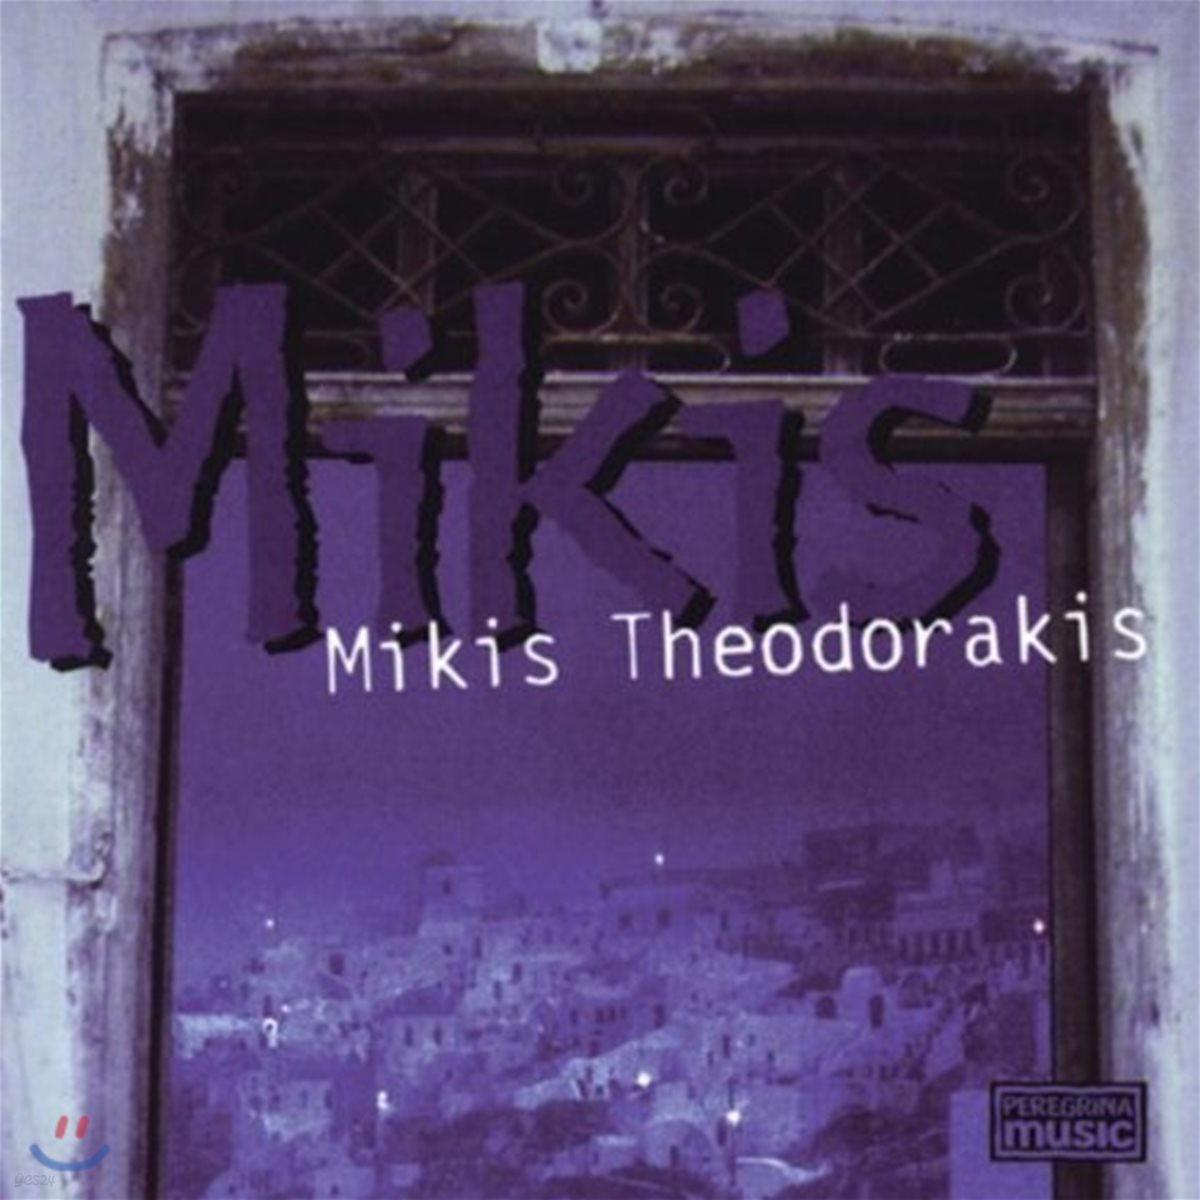 Mikis Theodorakis - Mikis